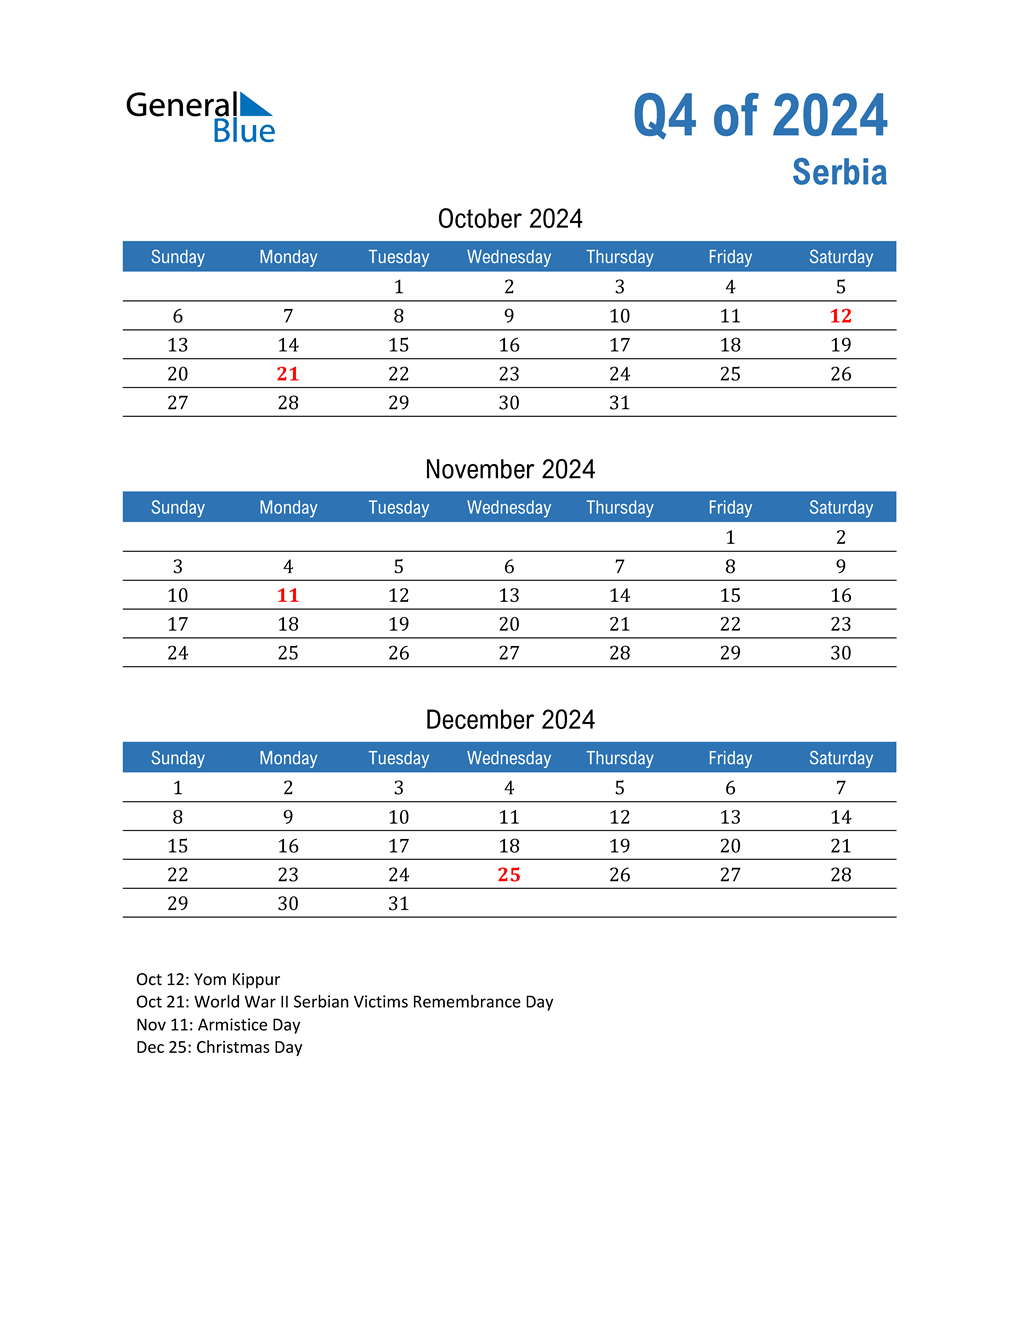  Serbia 2024 Quarterly Calendar 